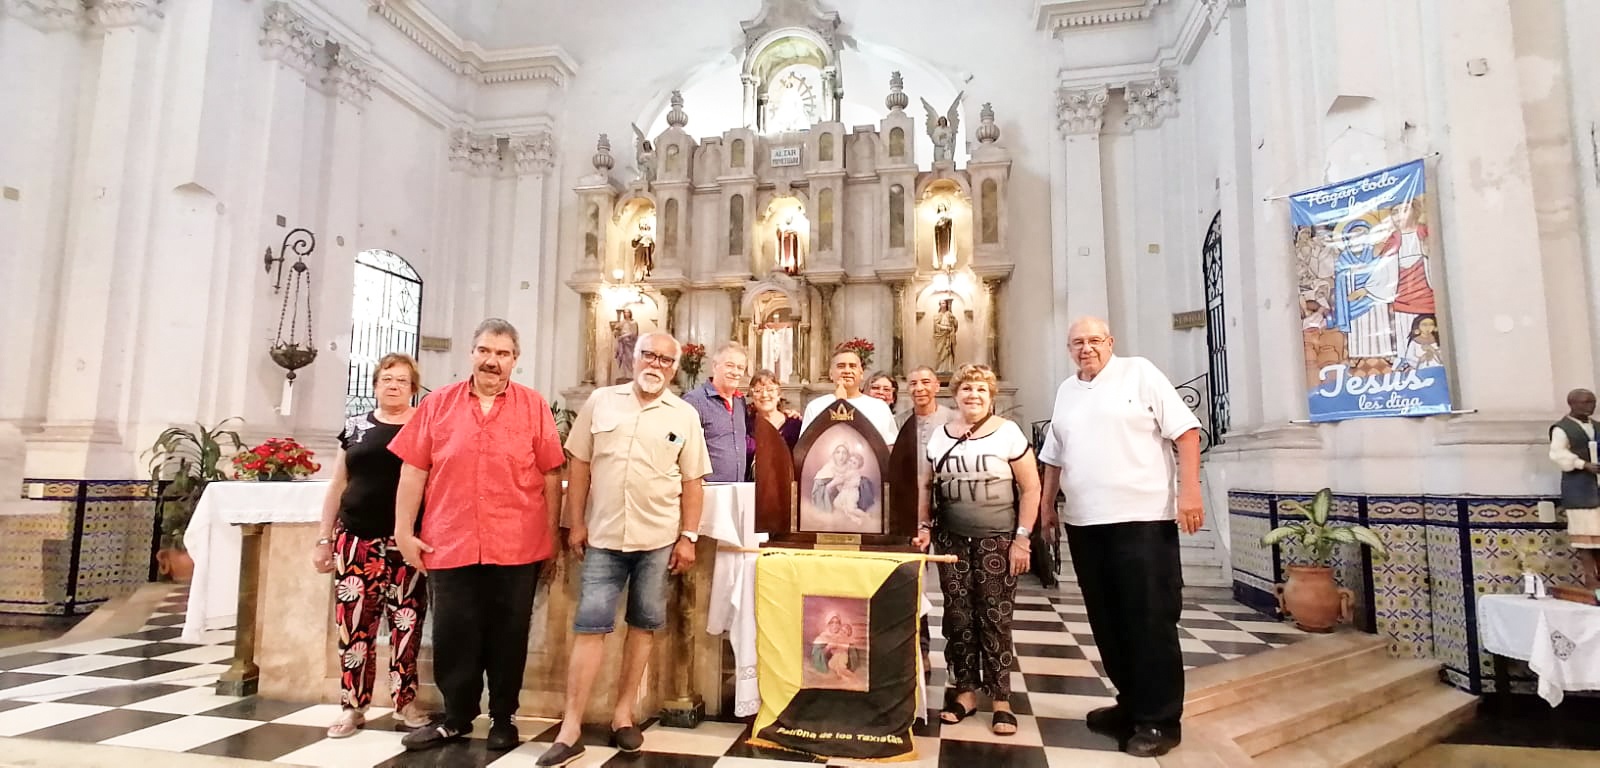 Movimiento Taxistas Católicos: misión en camino